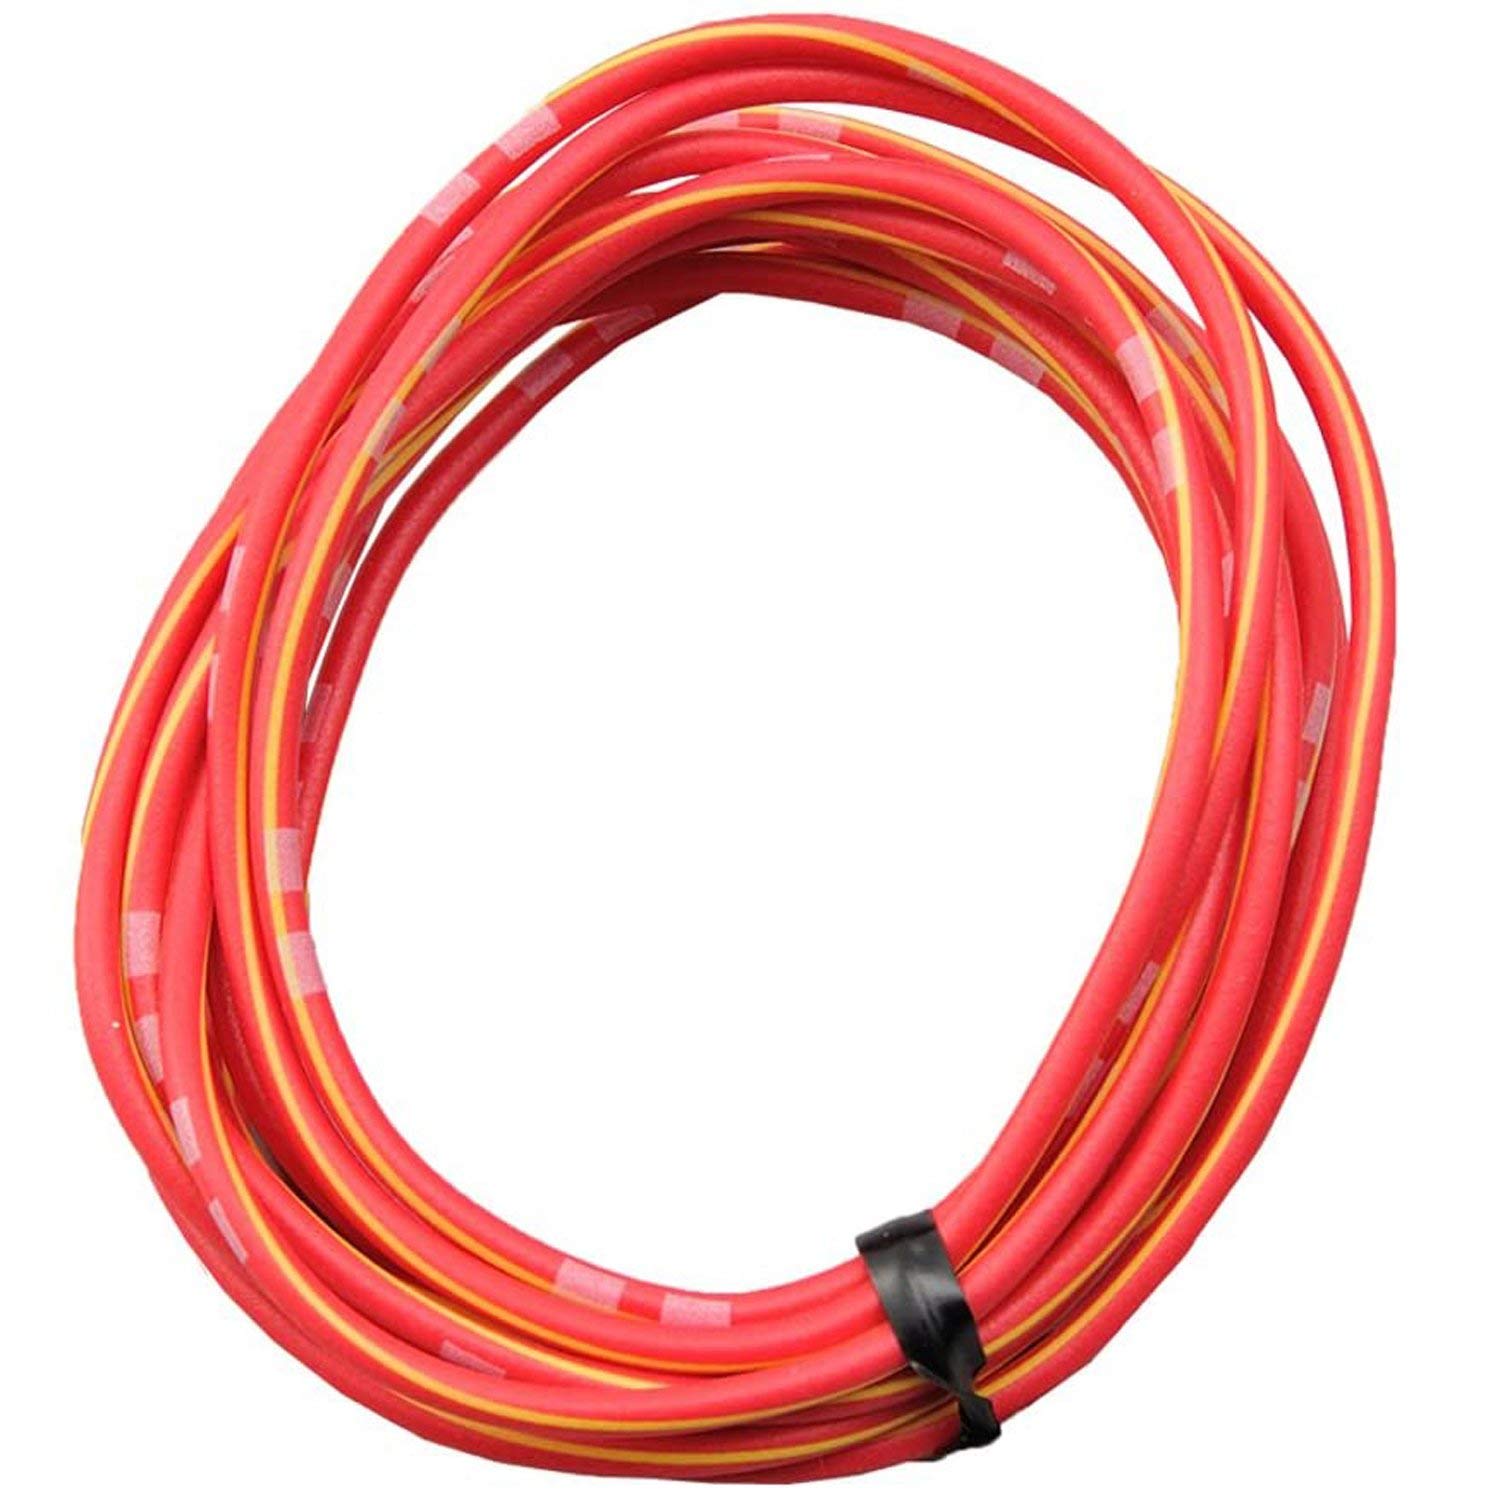 DAYTONA farbiges Kabel AWG18 0.75qmm, 2 Meter, rot/gelb von Daytona